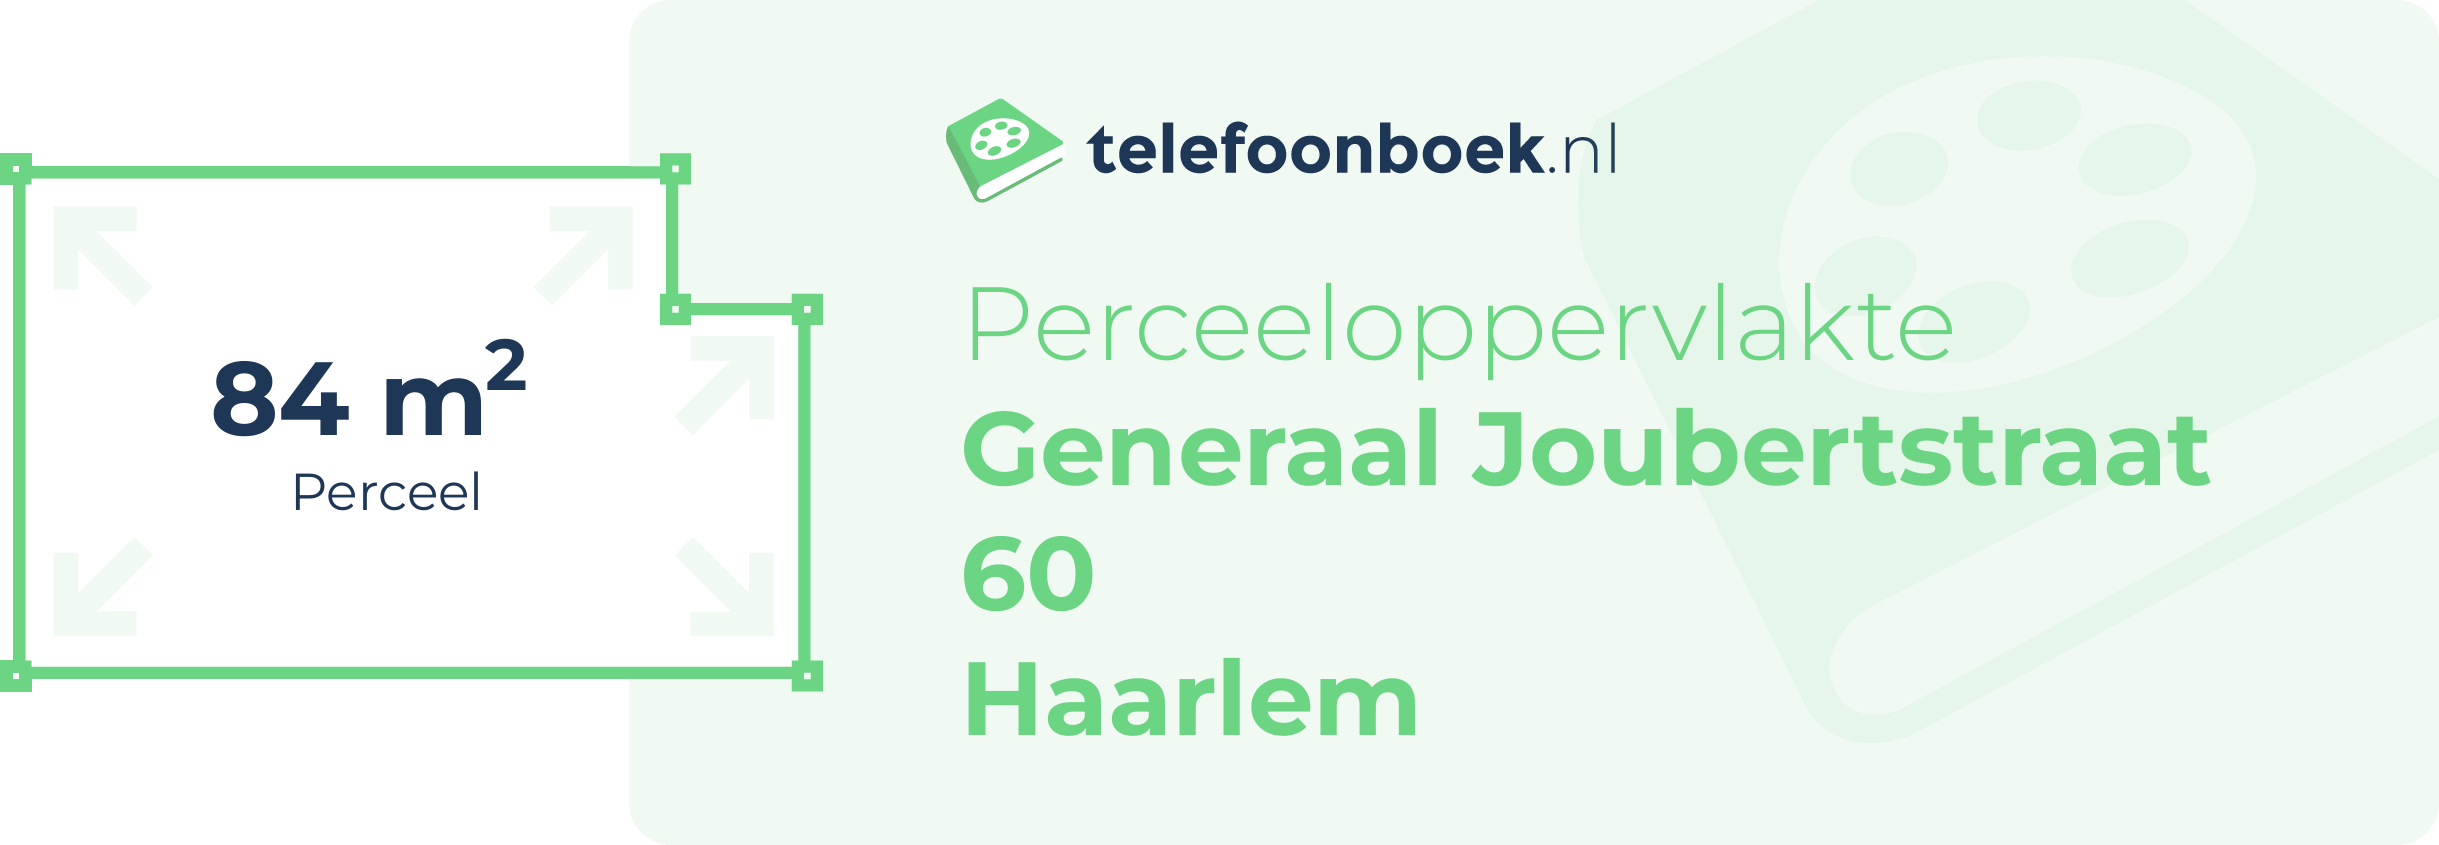 Perceeloppervlakte Generaal Joubertstraat 60 Haarlem